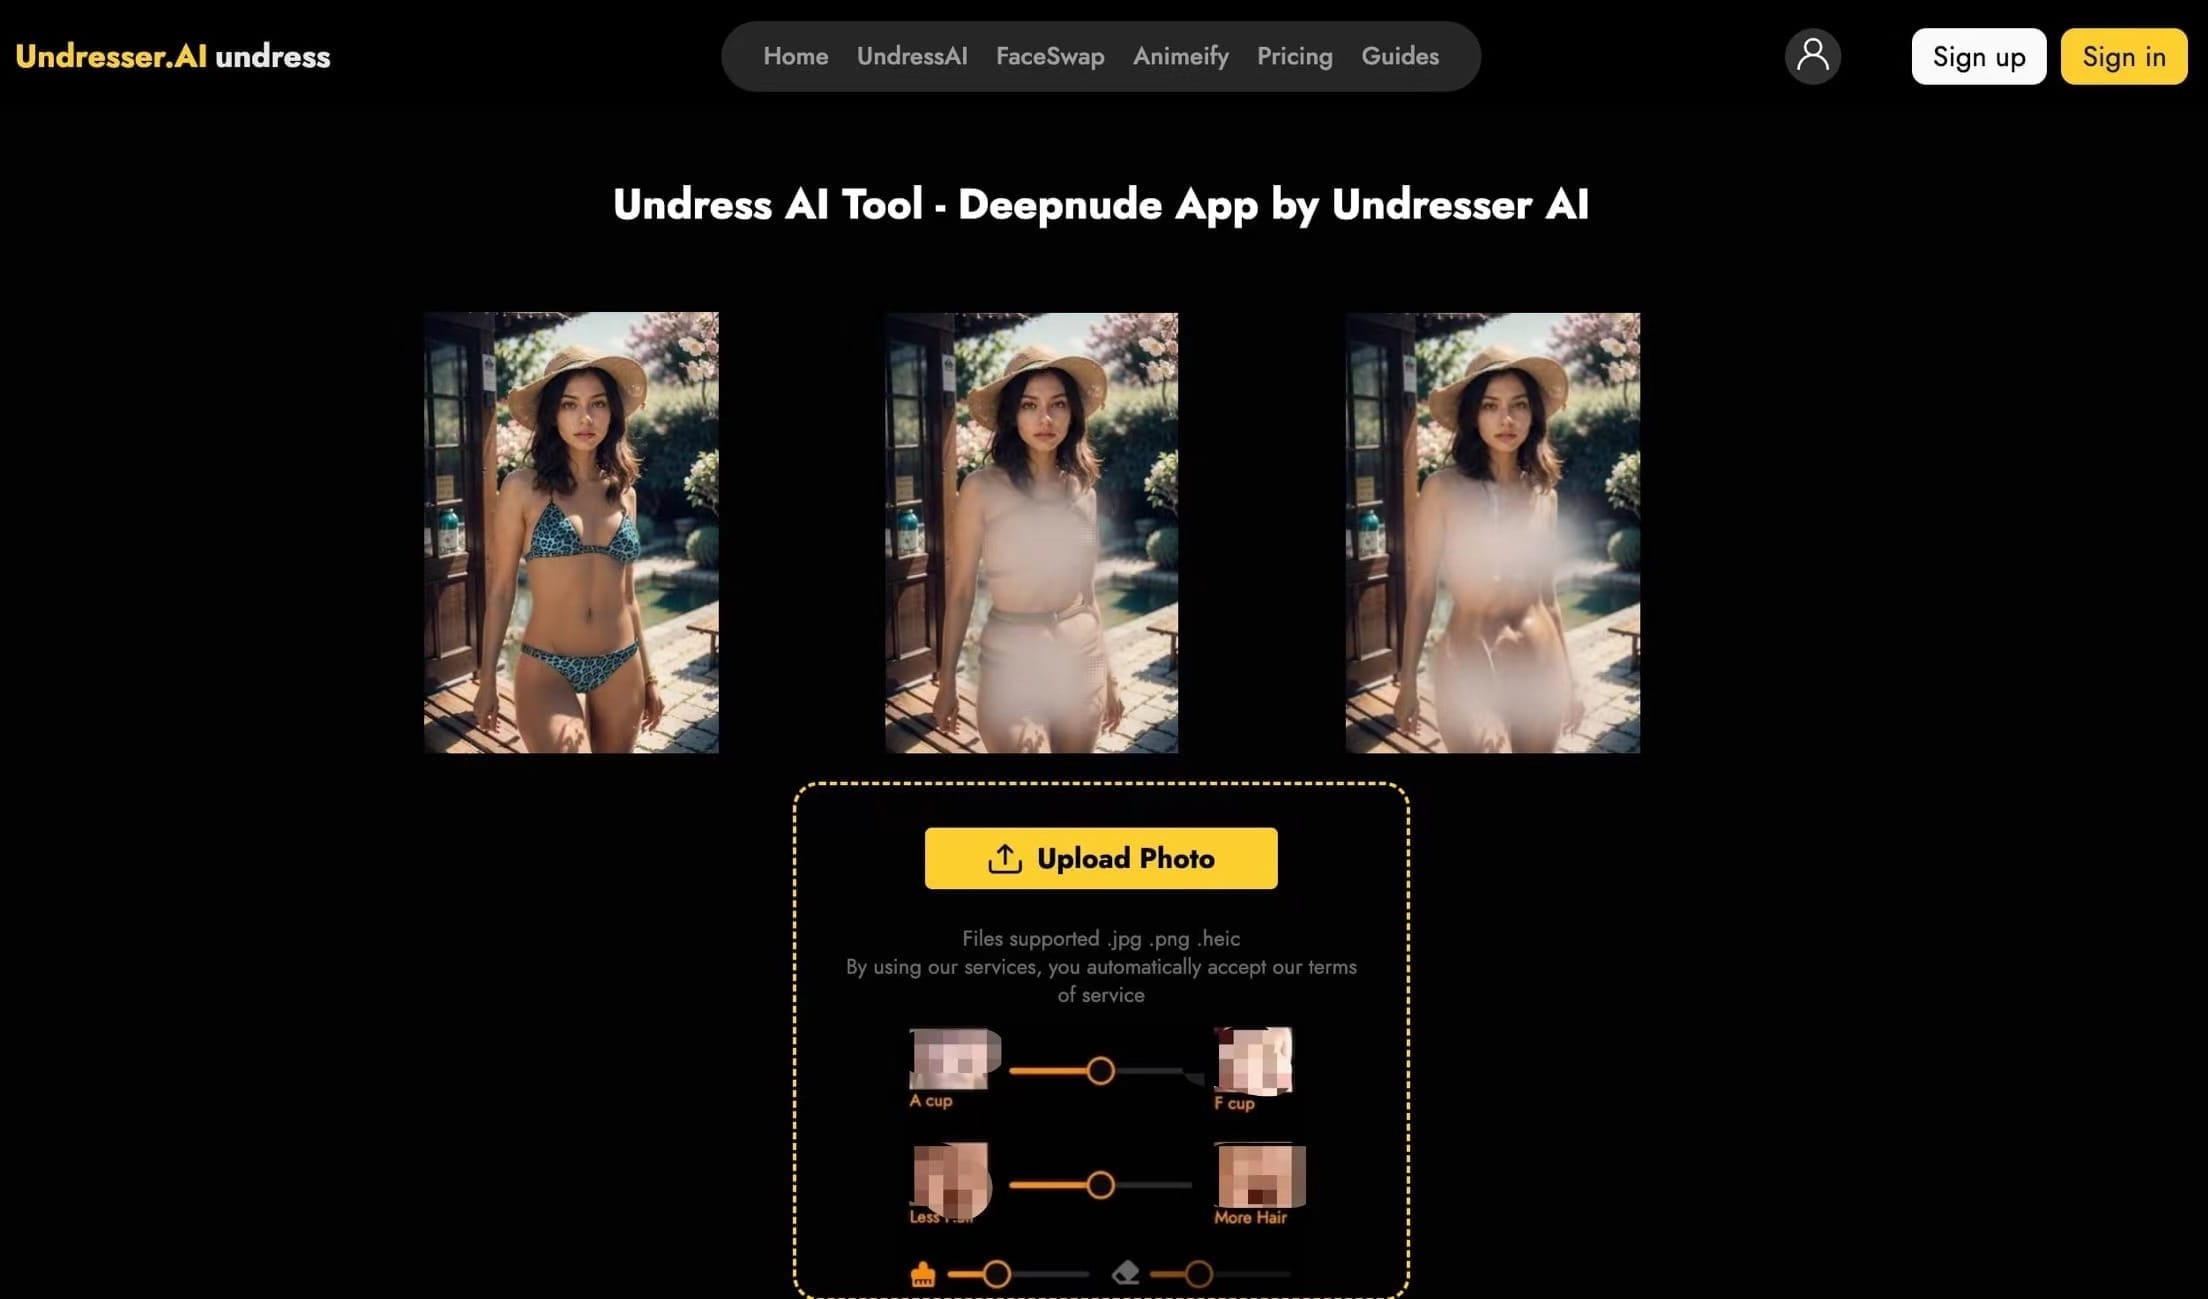 Undresser.AI - Create Deepnude Images for FREE | Undress AI App